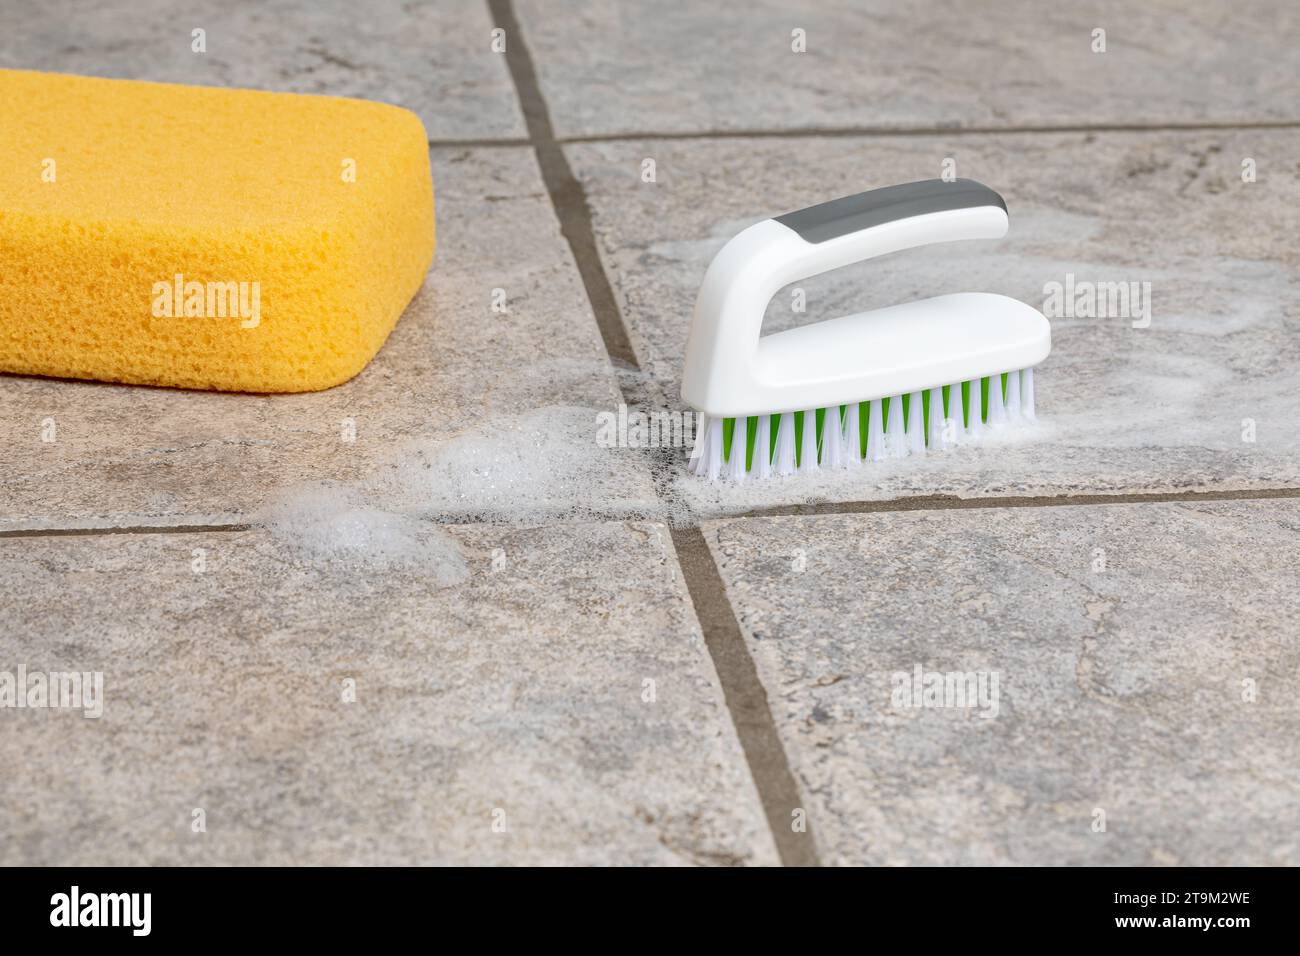 Reinigung von Keramikfliesenböden mit Scheuerbürste und Schwamm. Haushalt, Hausarbeit und Bodenpflegekonzept. Stockfoto